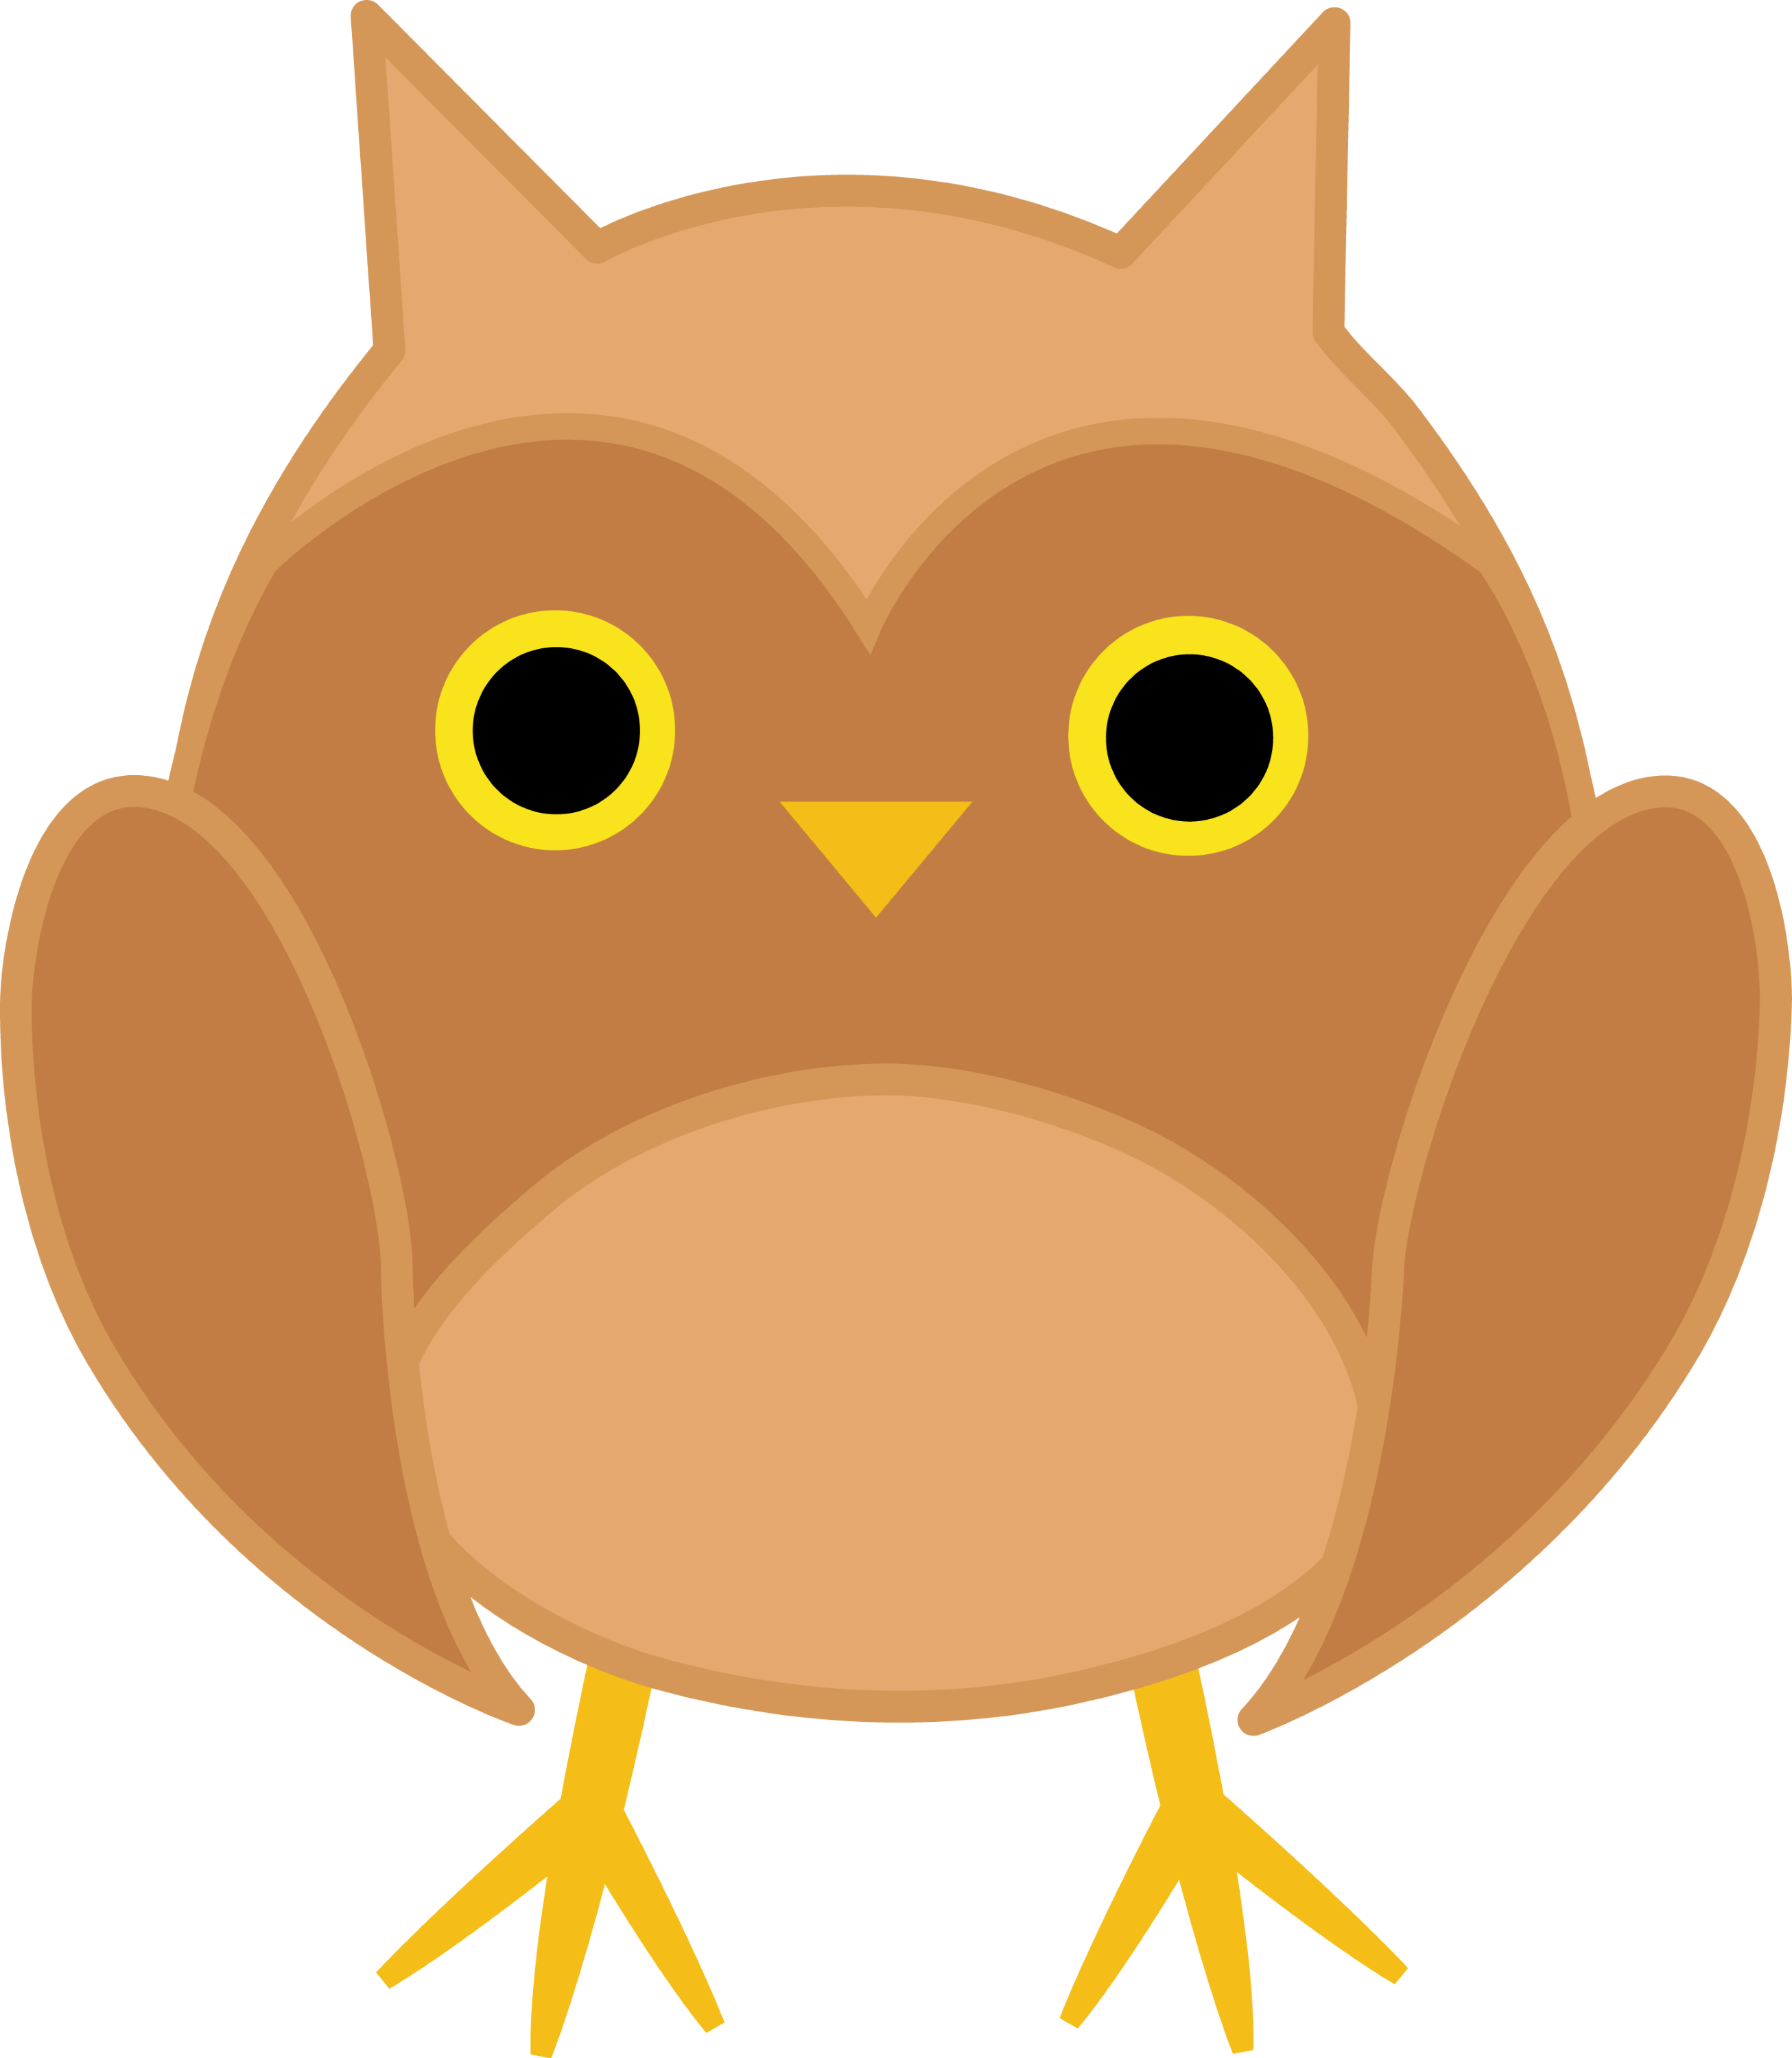 Cute Brown Owl Free Clip Art